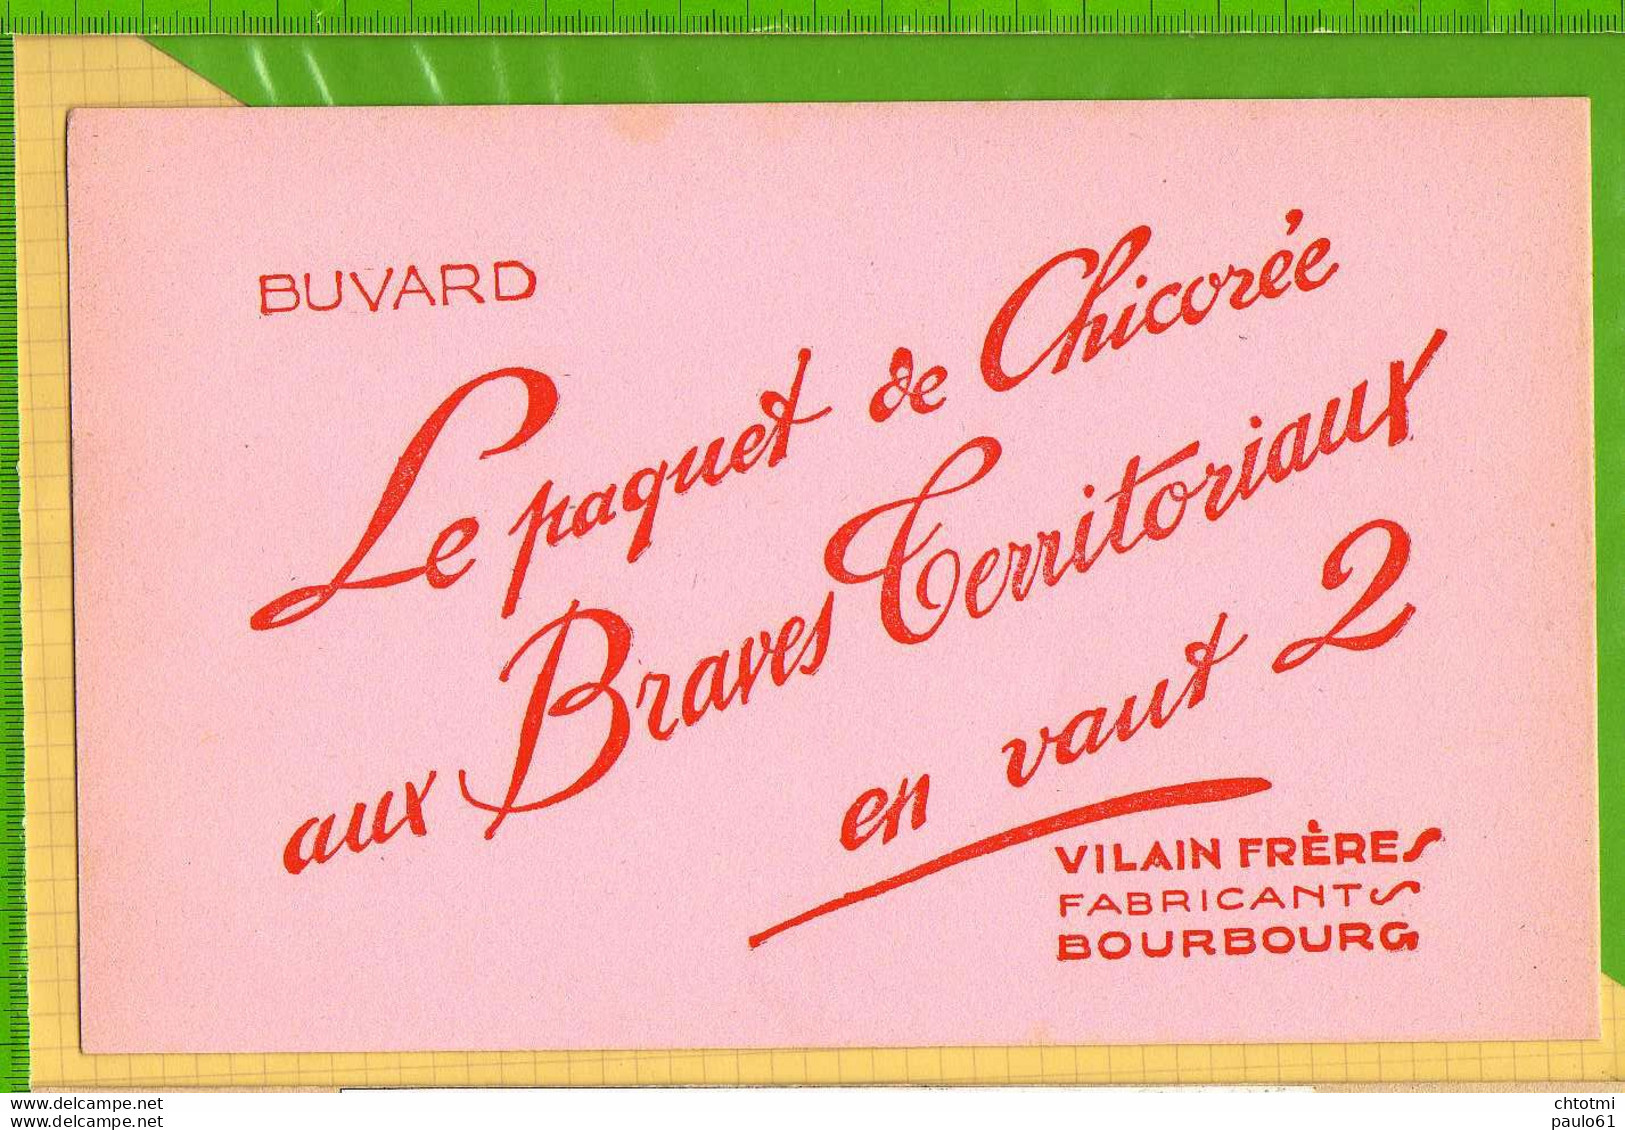 Buvard & Blotting Paper : Le Paquet De Chicorée AUX BRAVES TERRITORIAUX  En Vaut 2 VILAINS FRERES  BOURBOURG - Koffie En Thee